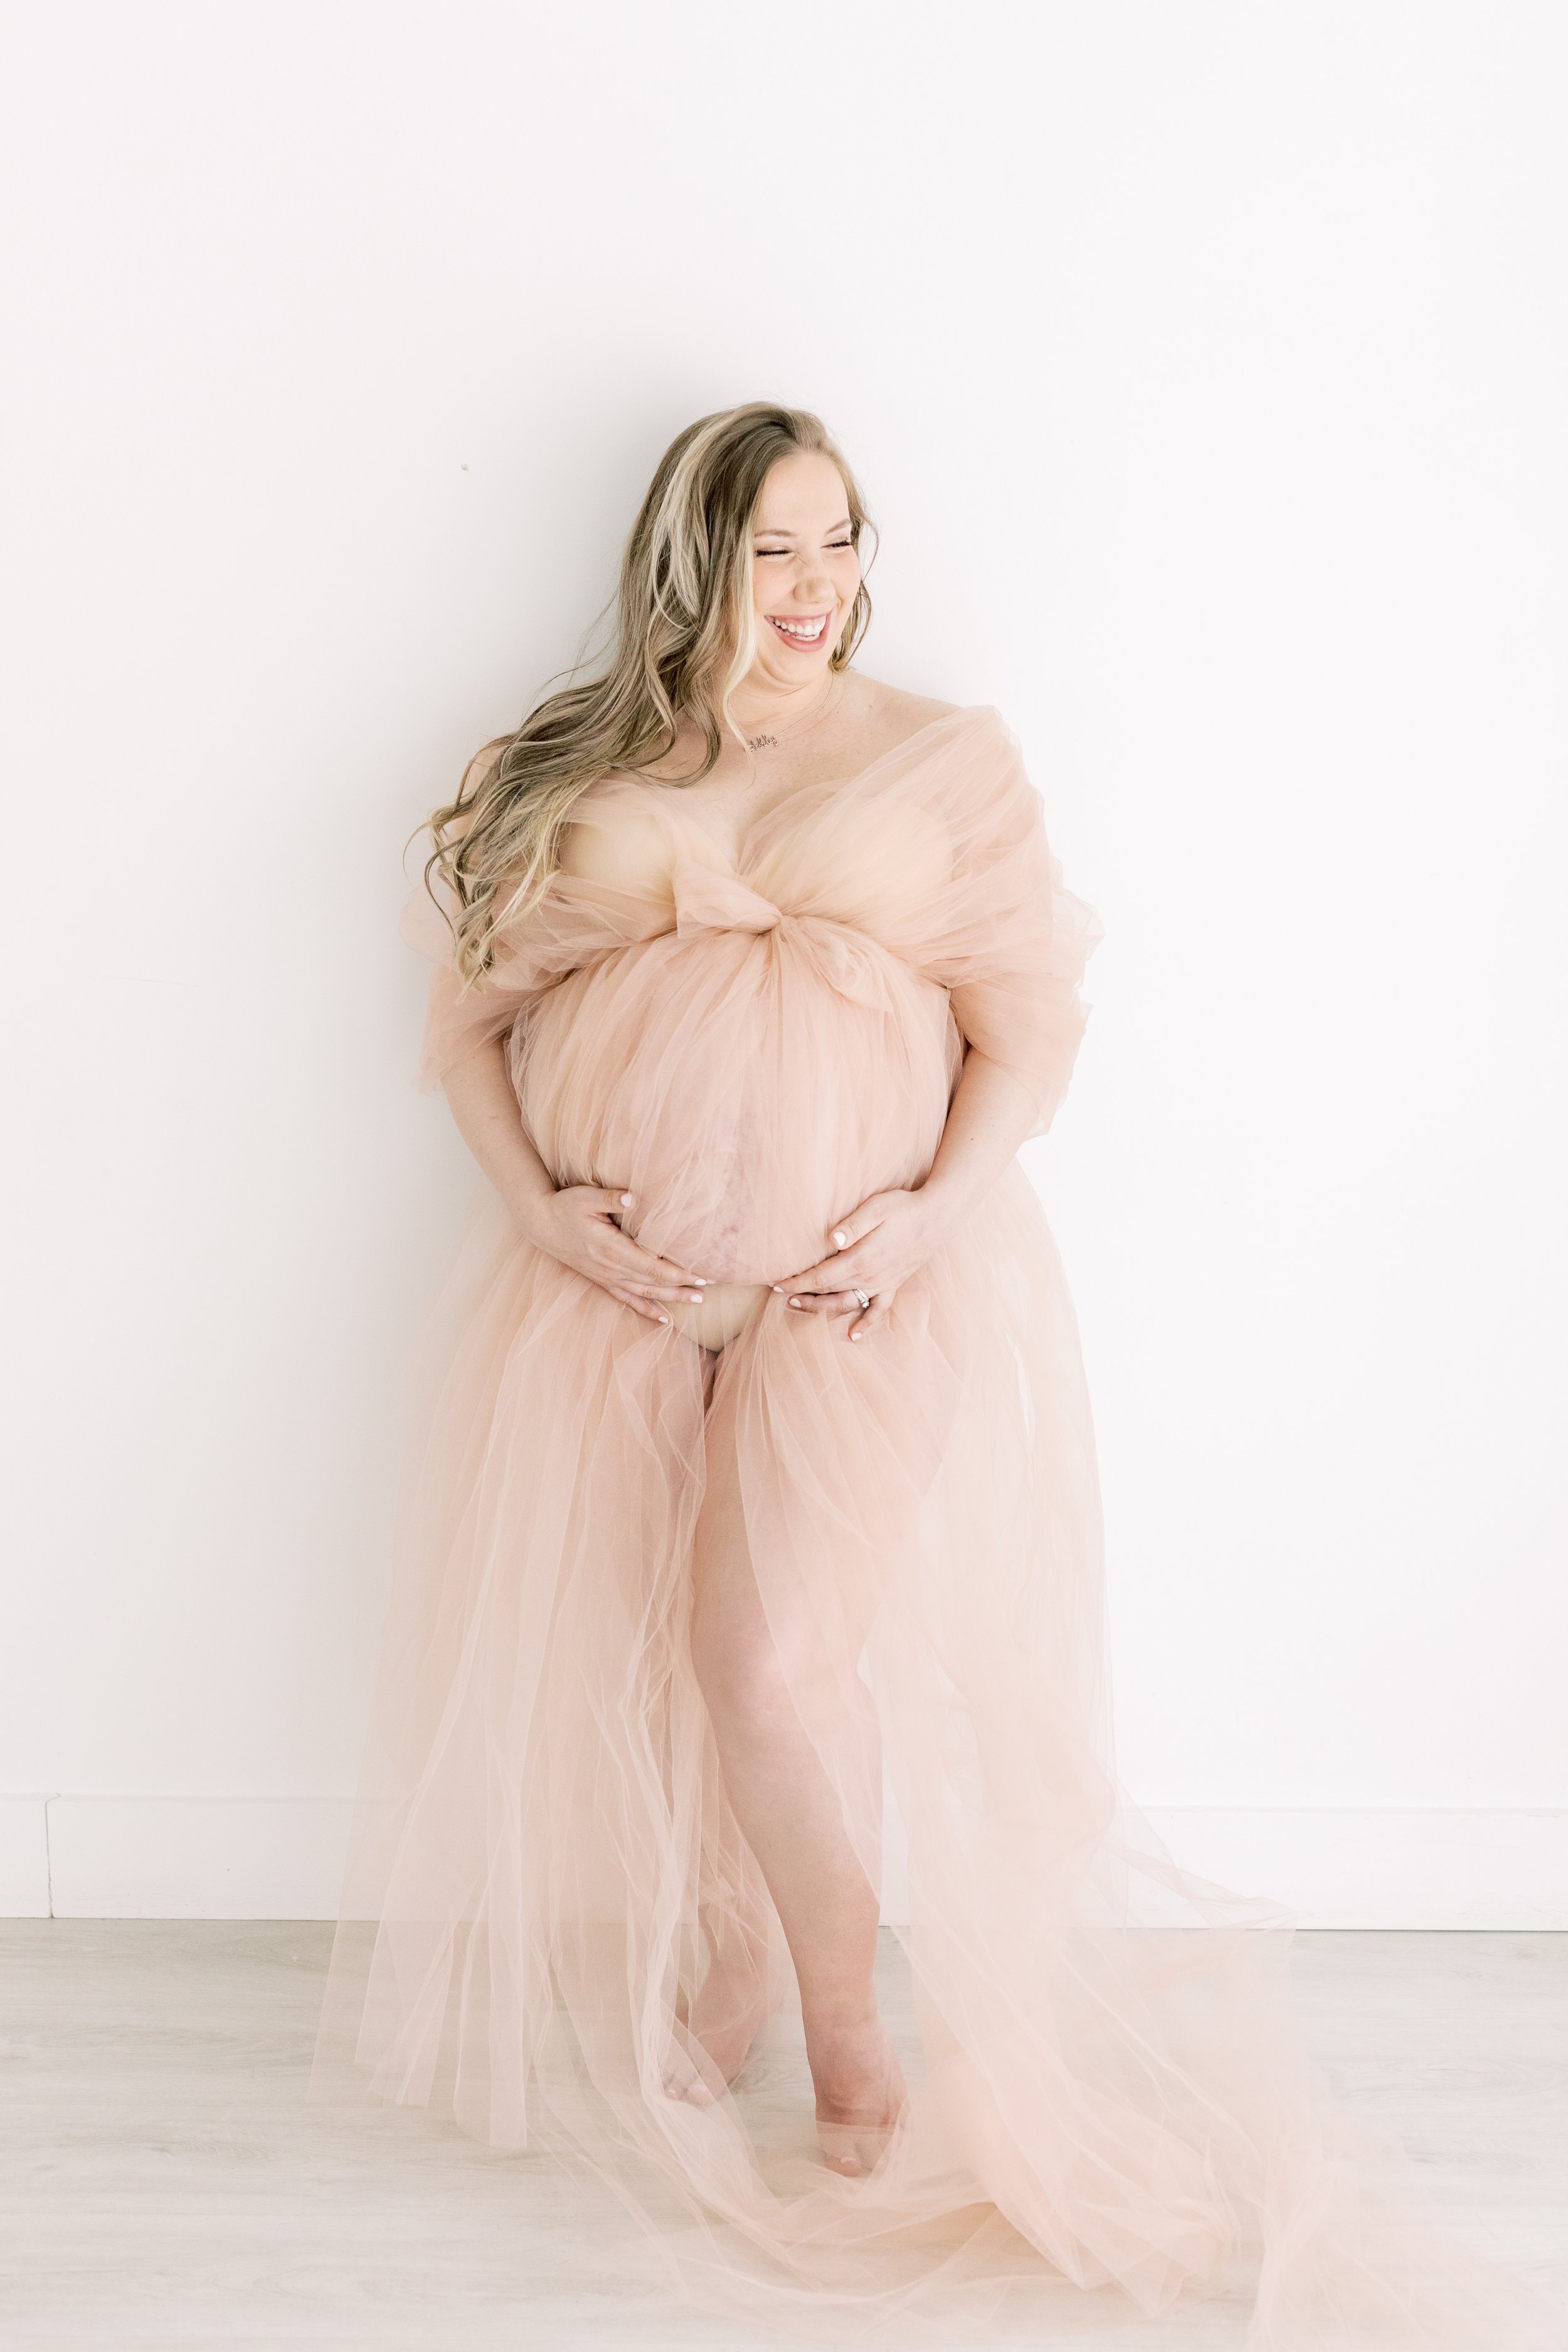 Boniferro Maternity Session 2022 - Kaitlynn Elliott Photography-7916.jpg